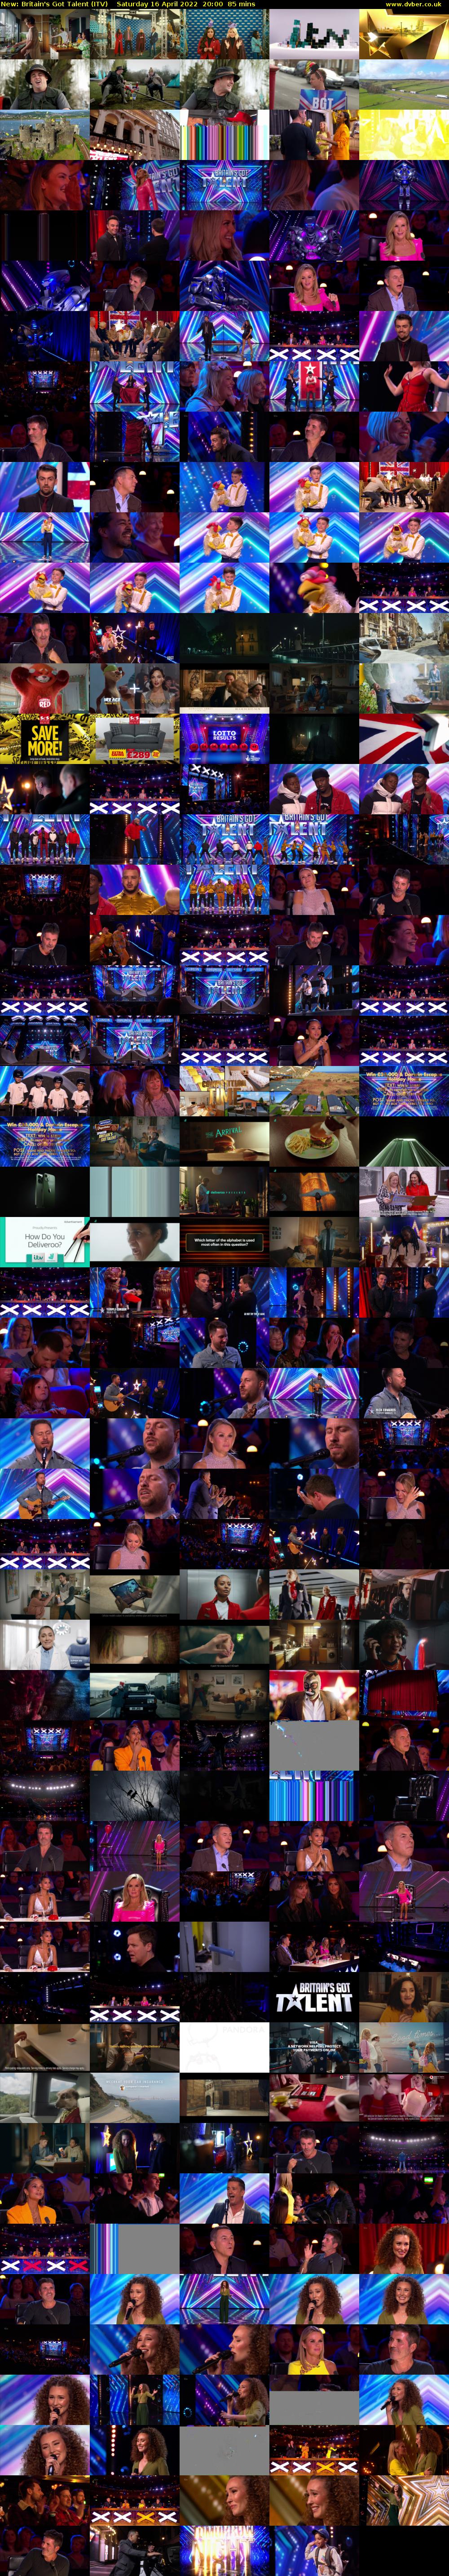 Britain's Got Talent (ITV) Saturday 16 April 2022 20:00 - 21:25